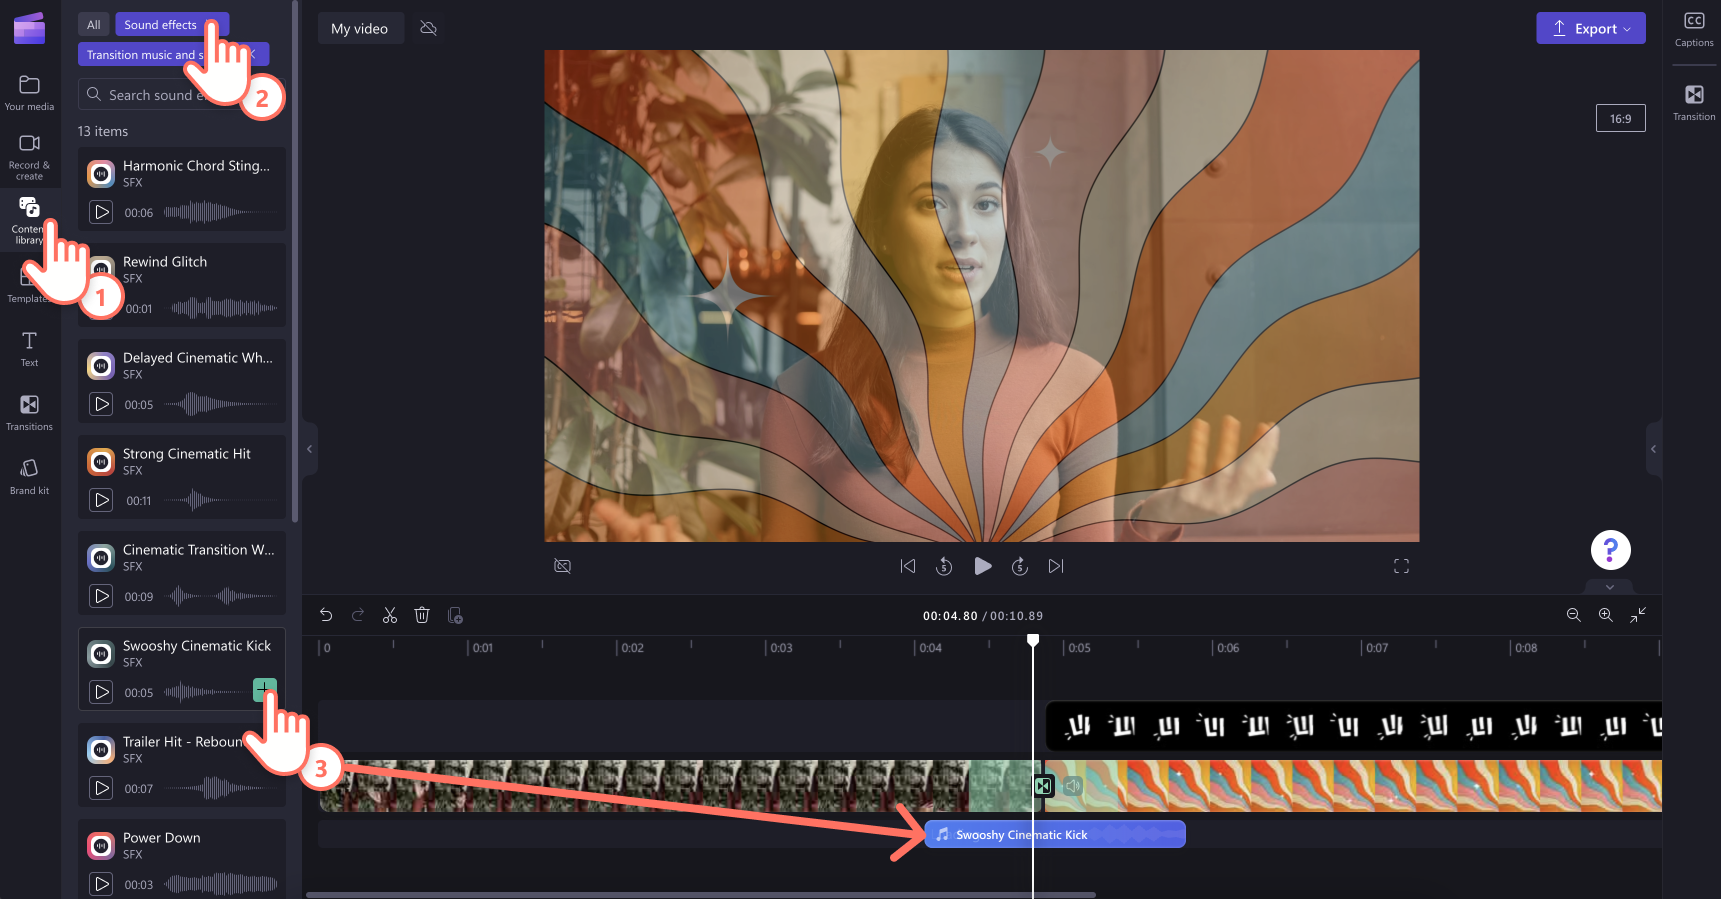 タイムラインの画面切り替え効果に効果音を追加しているユーザーの画像。